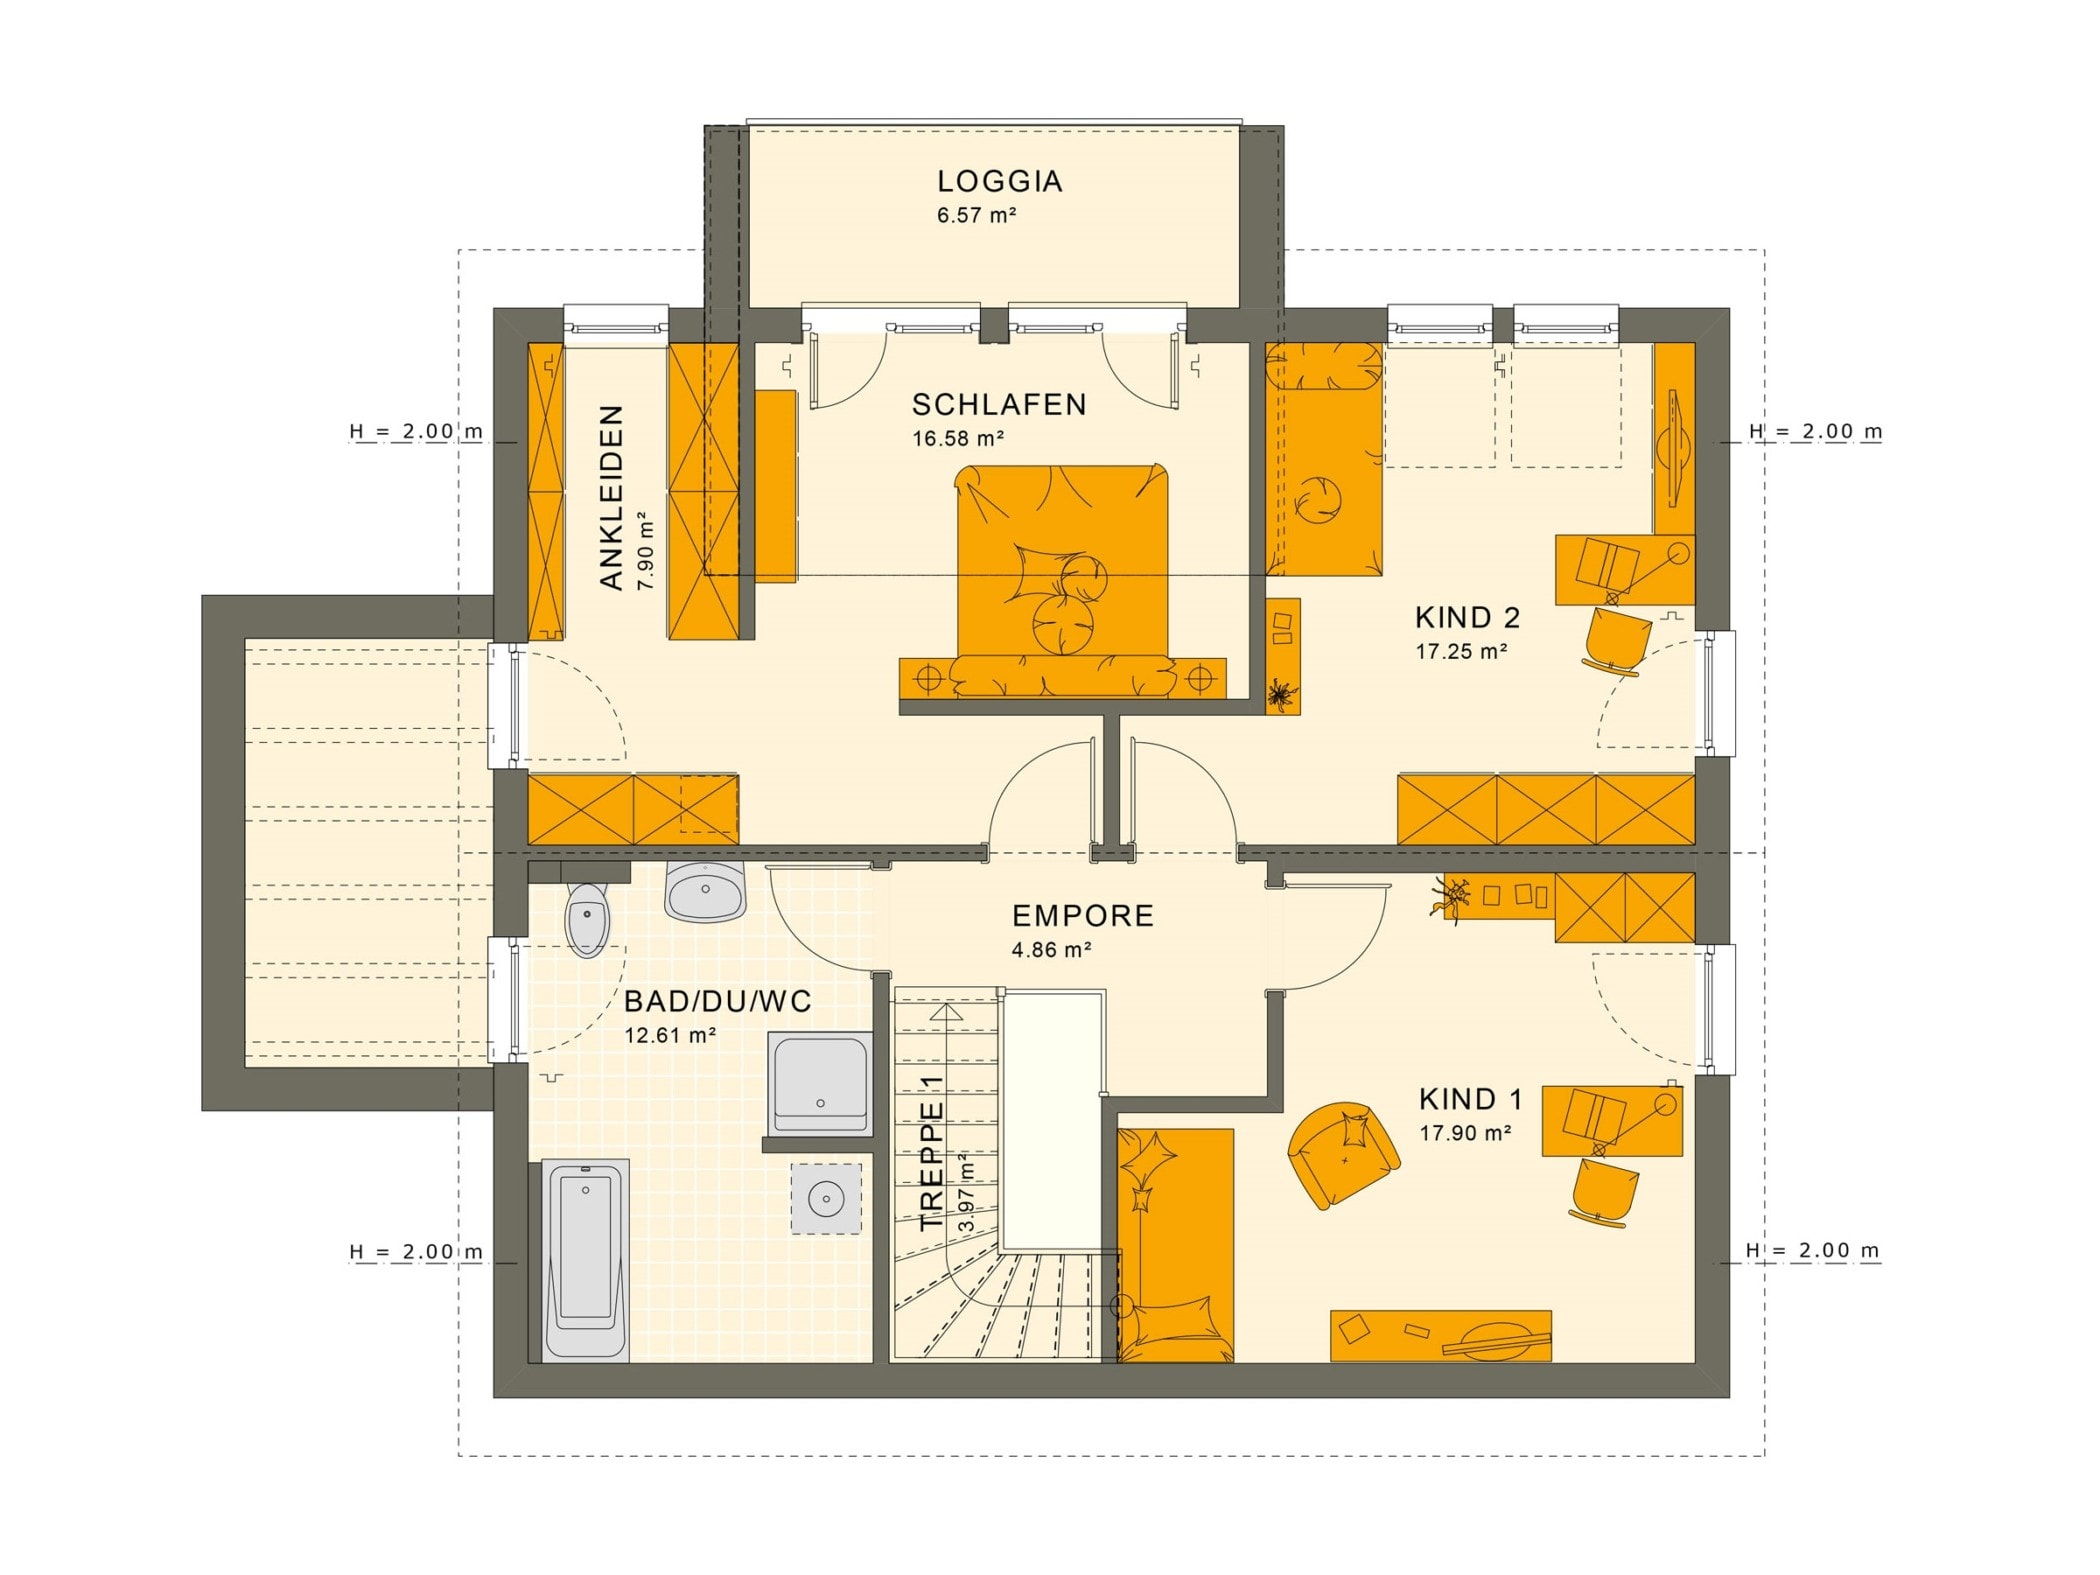 Einfamilienhaus Grundriss Obergeschoss mit Satteldach & Loggia, 5 Zimmer, 165 qm - Fertighaus SUNSHINE 165 V5 von Living Haus - HausbauDirekt.de